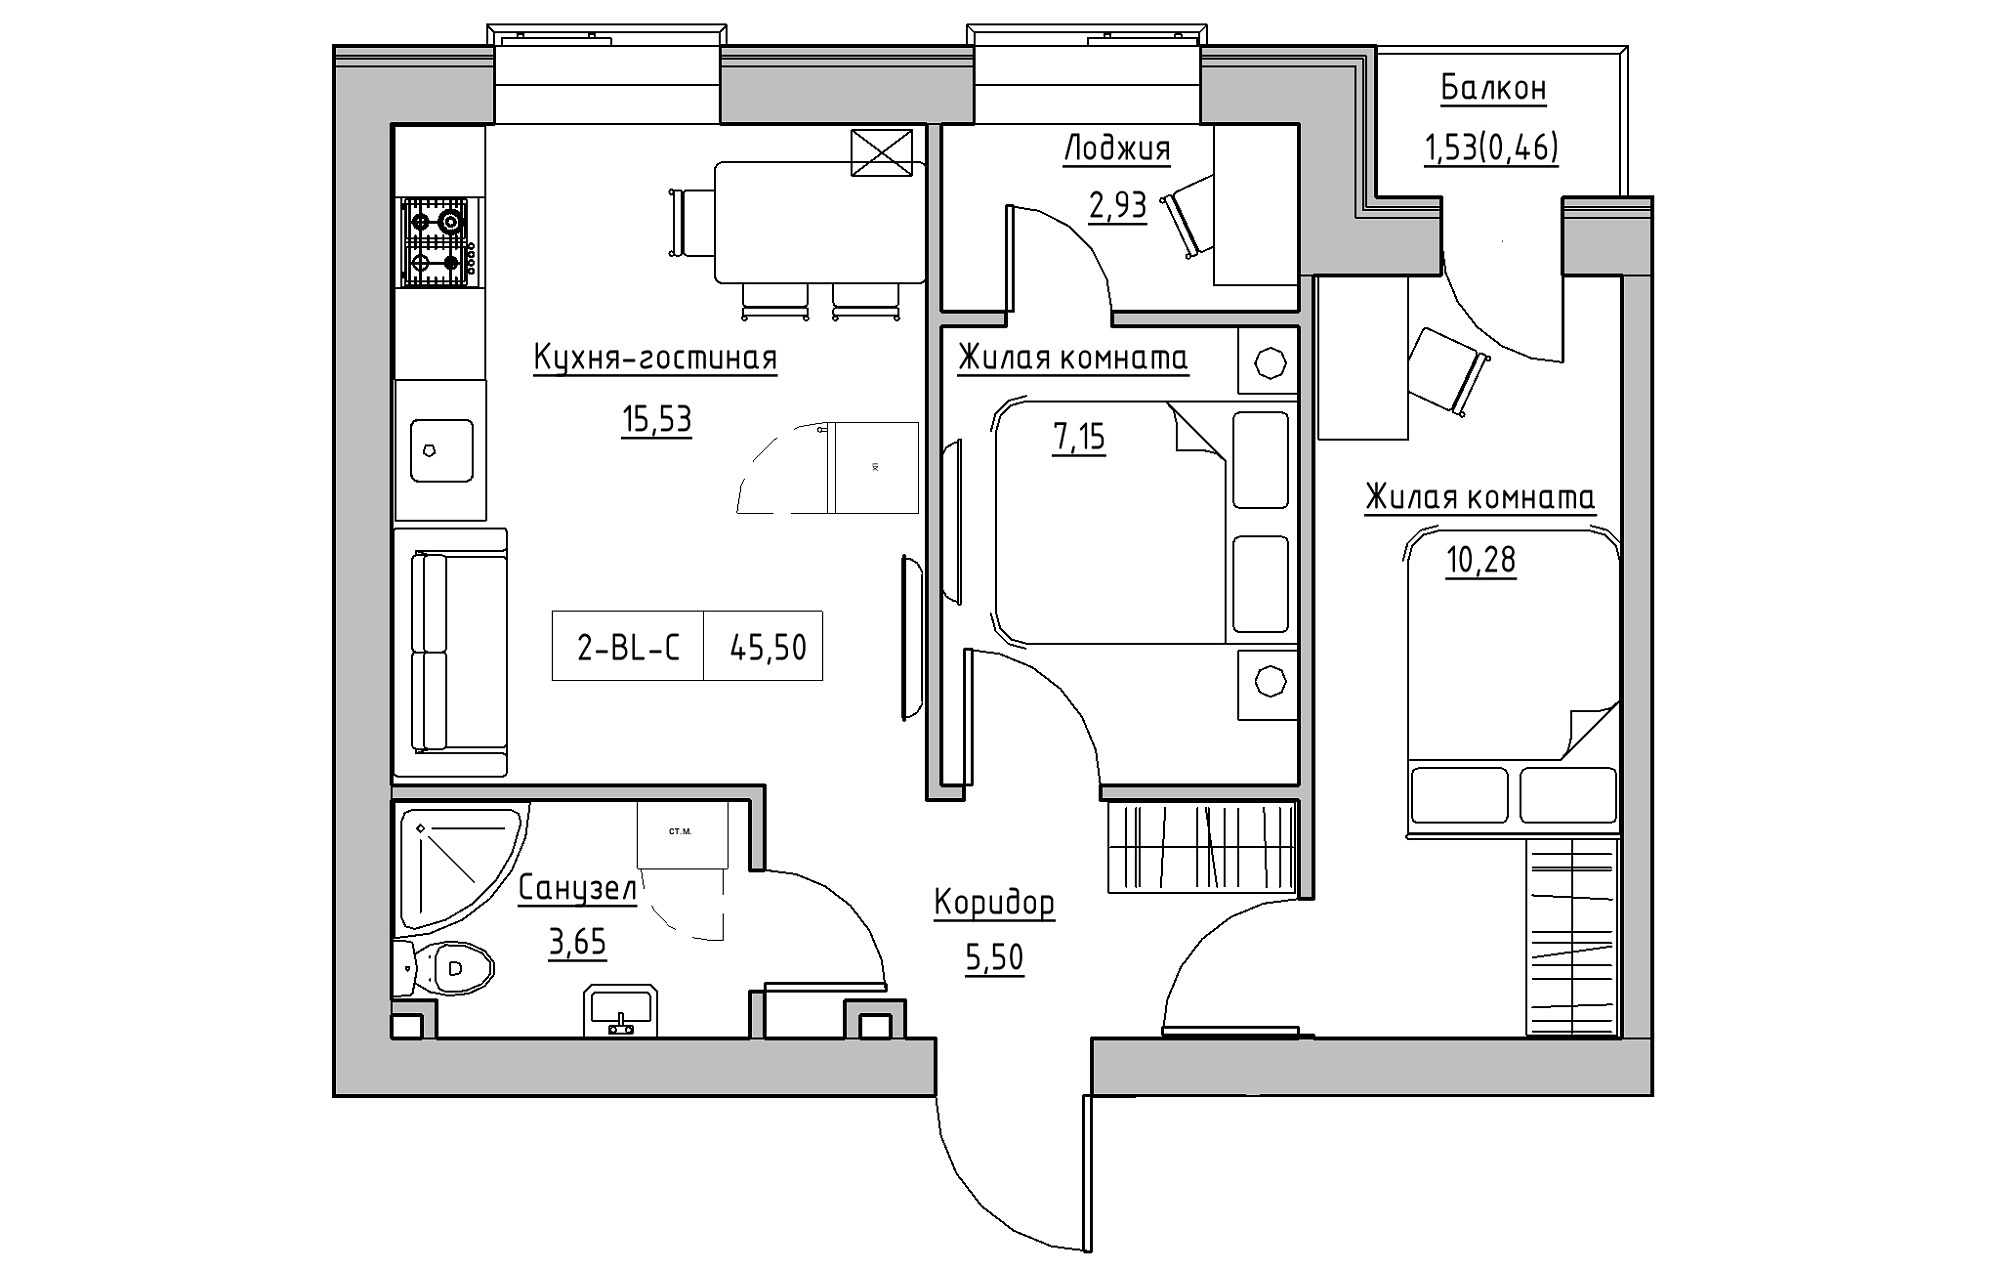 Планировка 2-к квартира площей 45.5м2, KS-018-02/0008.